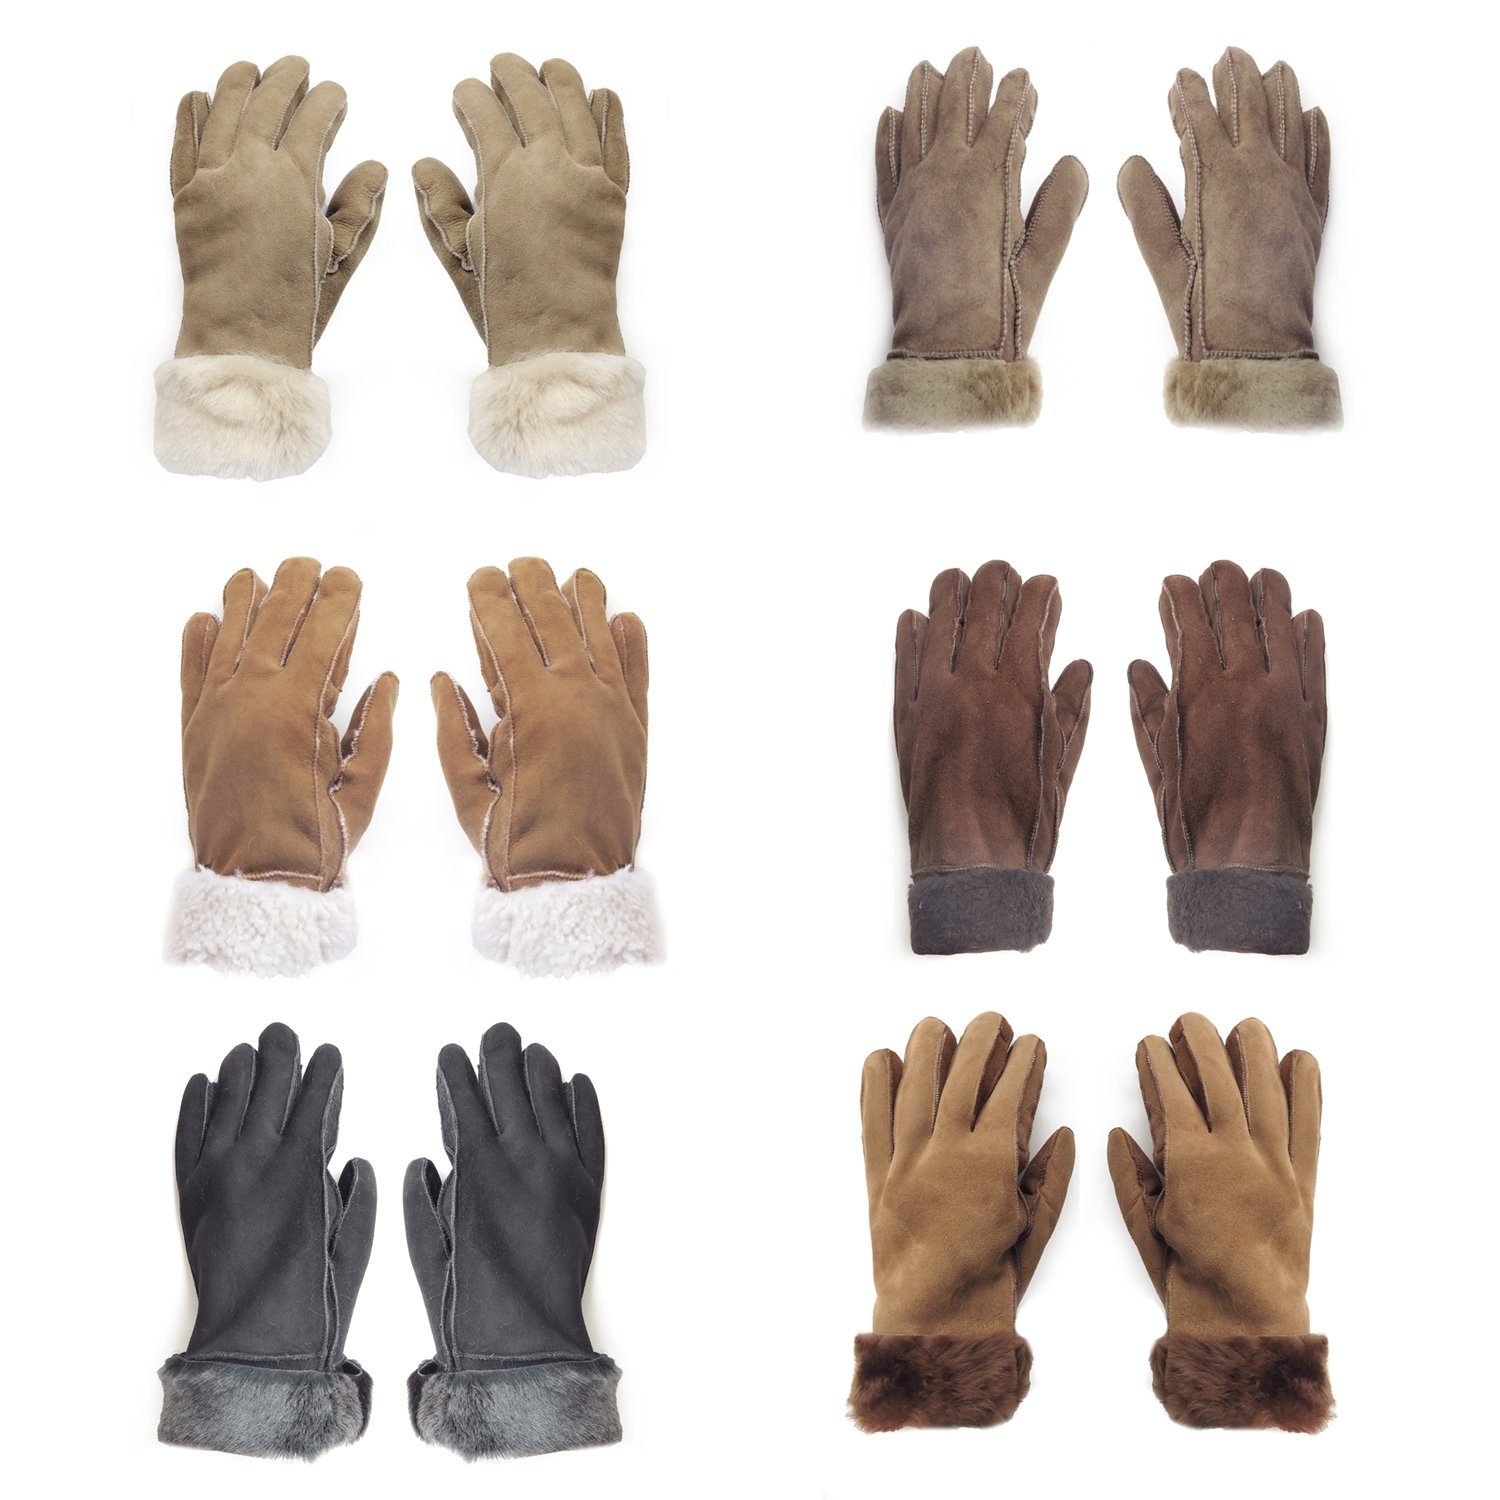 Sonia Originelli Winter-Arbeitshandschuhe Handschuhe aus Lammfell des unisex Schaffell abweichen Fells Farben hochwertig abweichen, warm dunkelbraun Struktur kann können